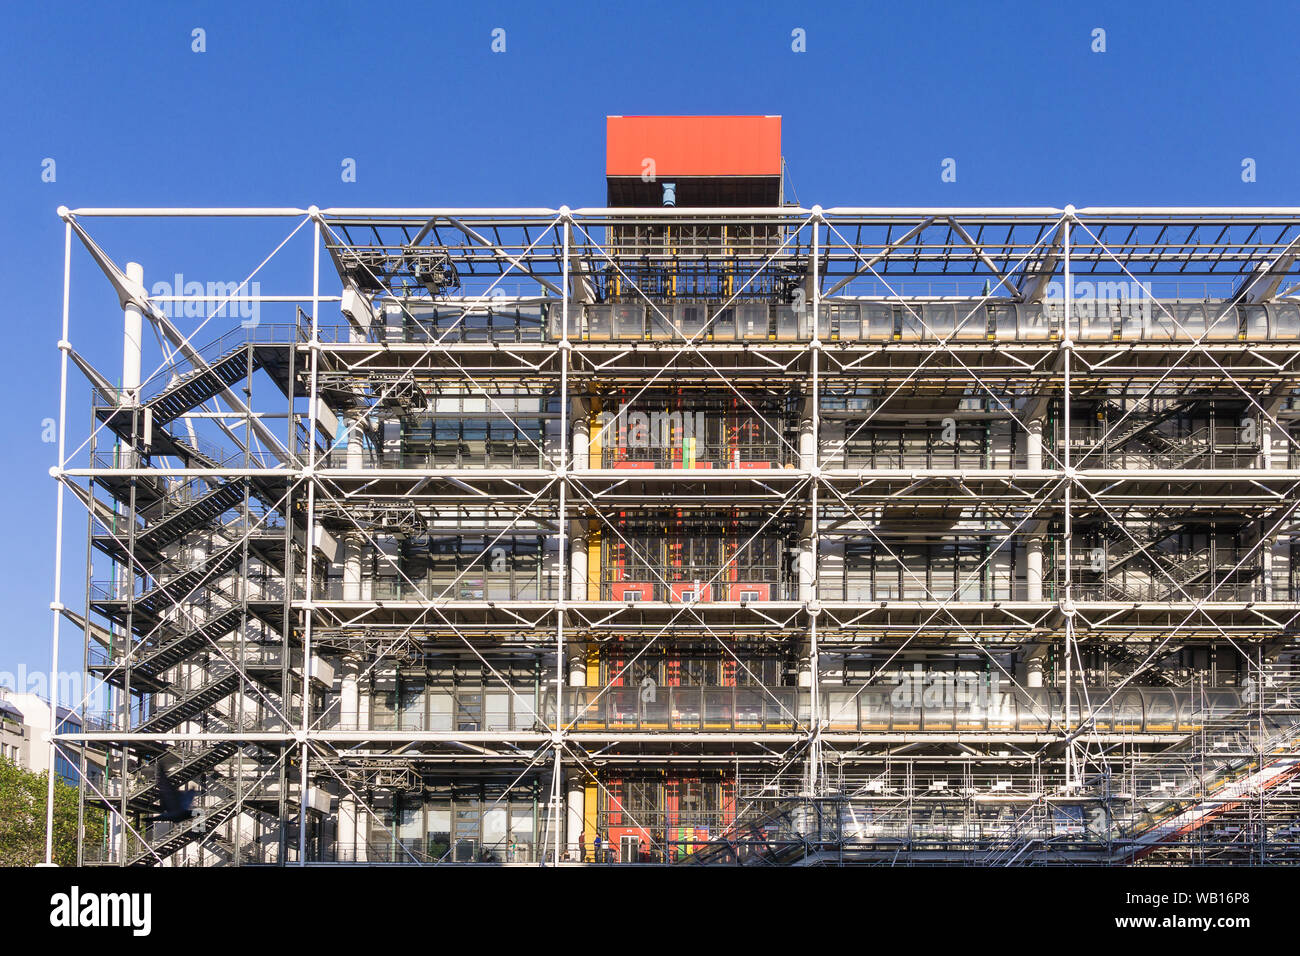 Centre Pompidou Paris extérieur - Façade de l'édifice du Centre Pompidou à Paris, France, Europe. Banque D'Images